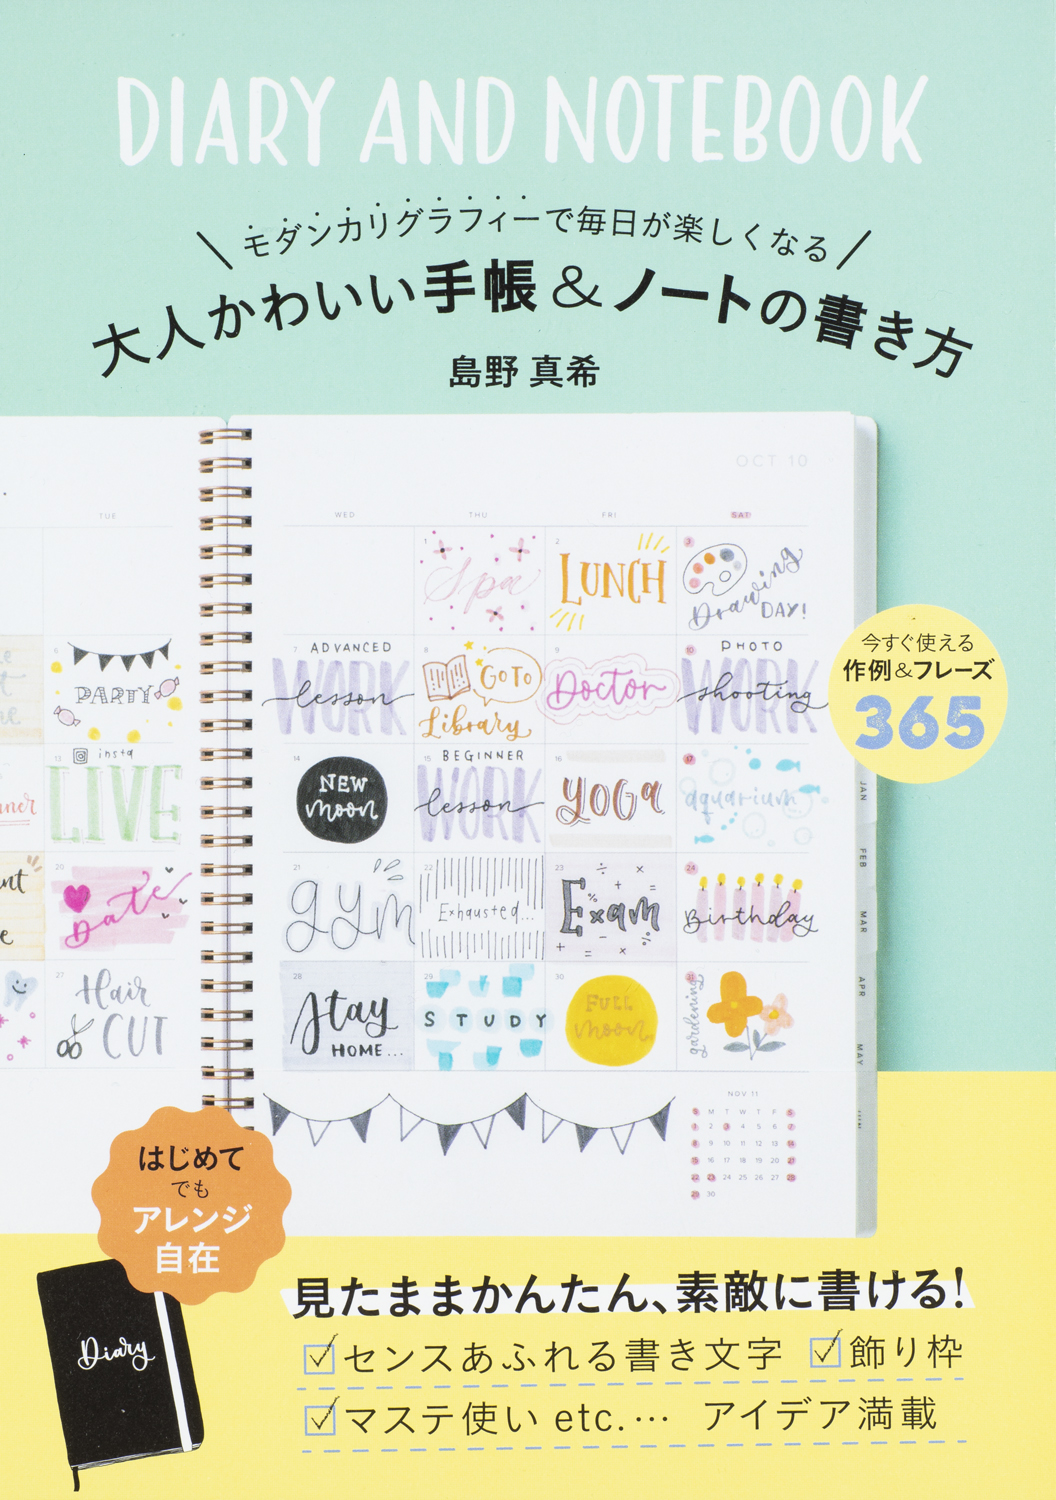 毎日が楽しくなるオリジナル手帳のアイデアが満載 日本の モダンカリグラフィー 第一人者が教える手帳術 株式会社世界文化ホールディングスのプレスリリース